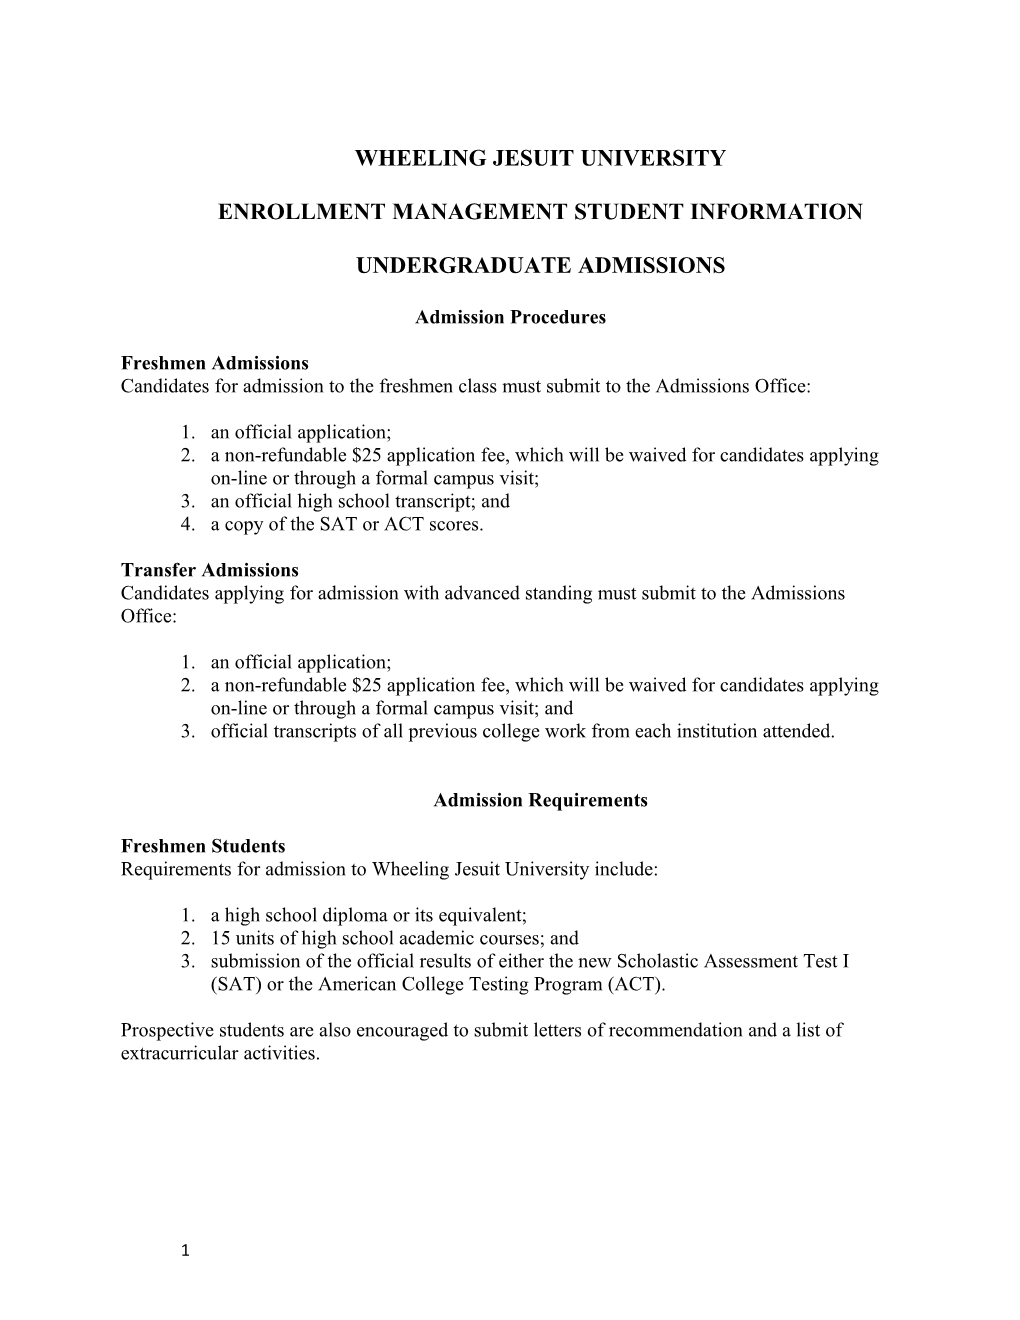 Enrollment Management Student Information